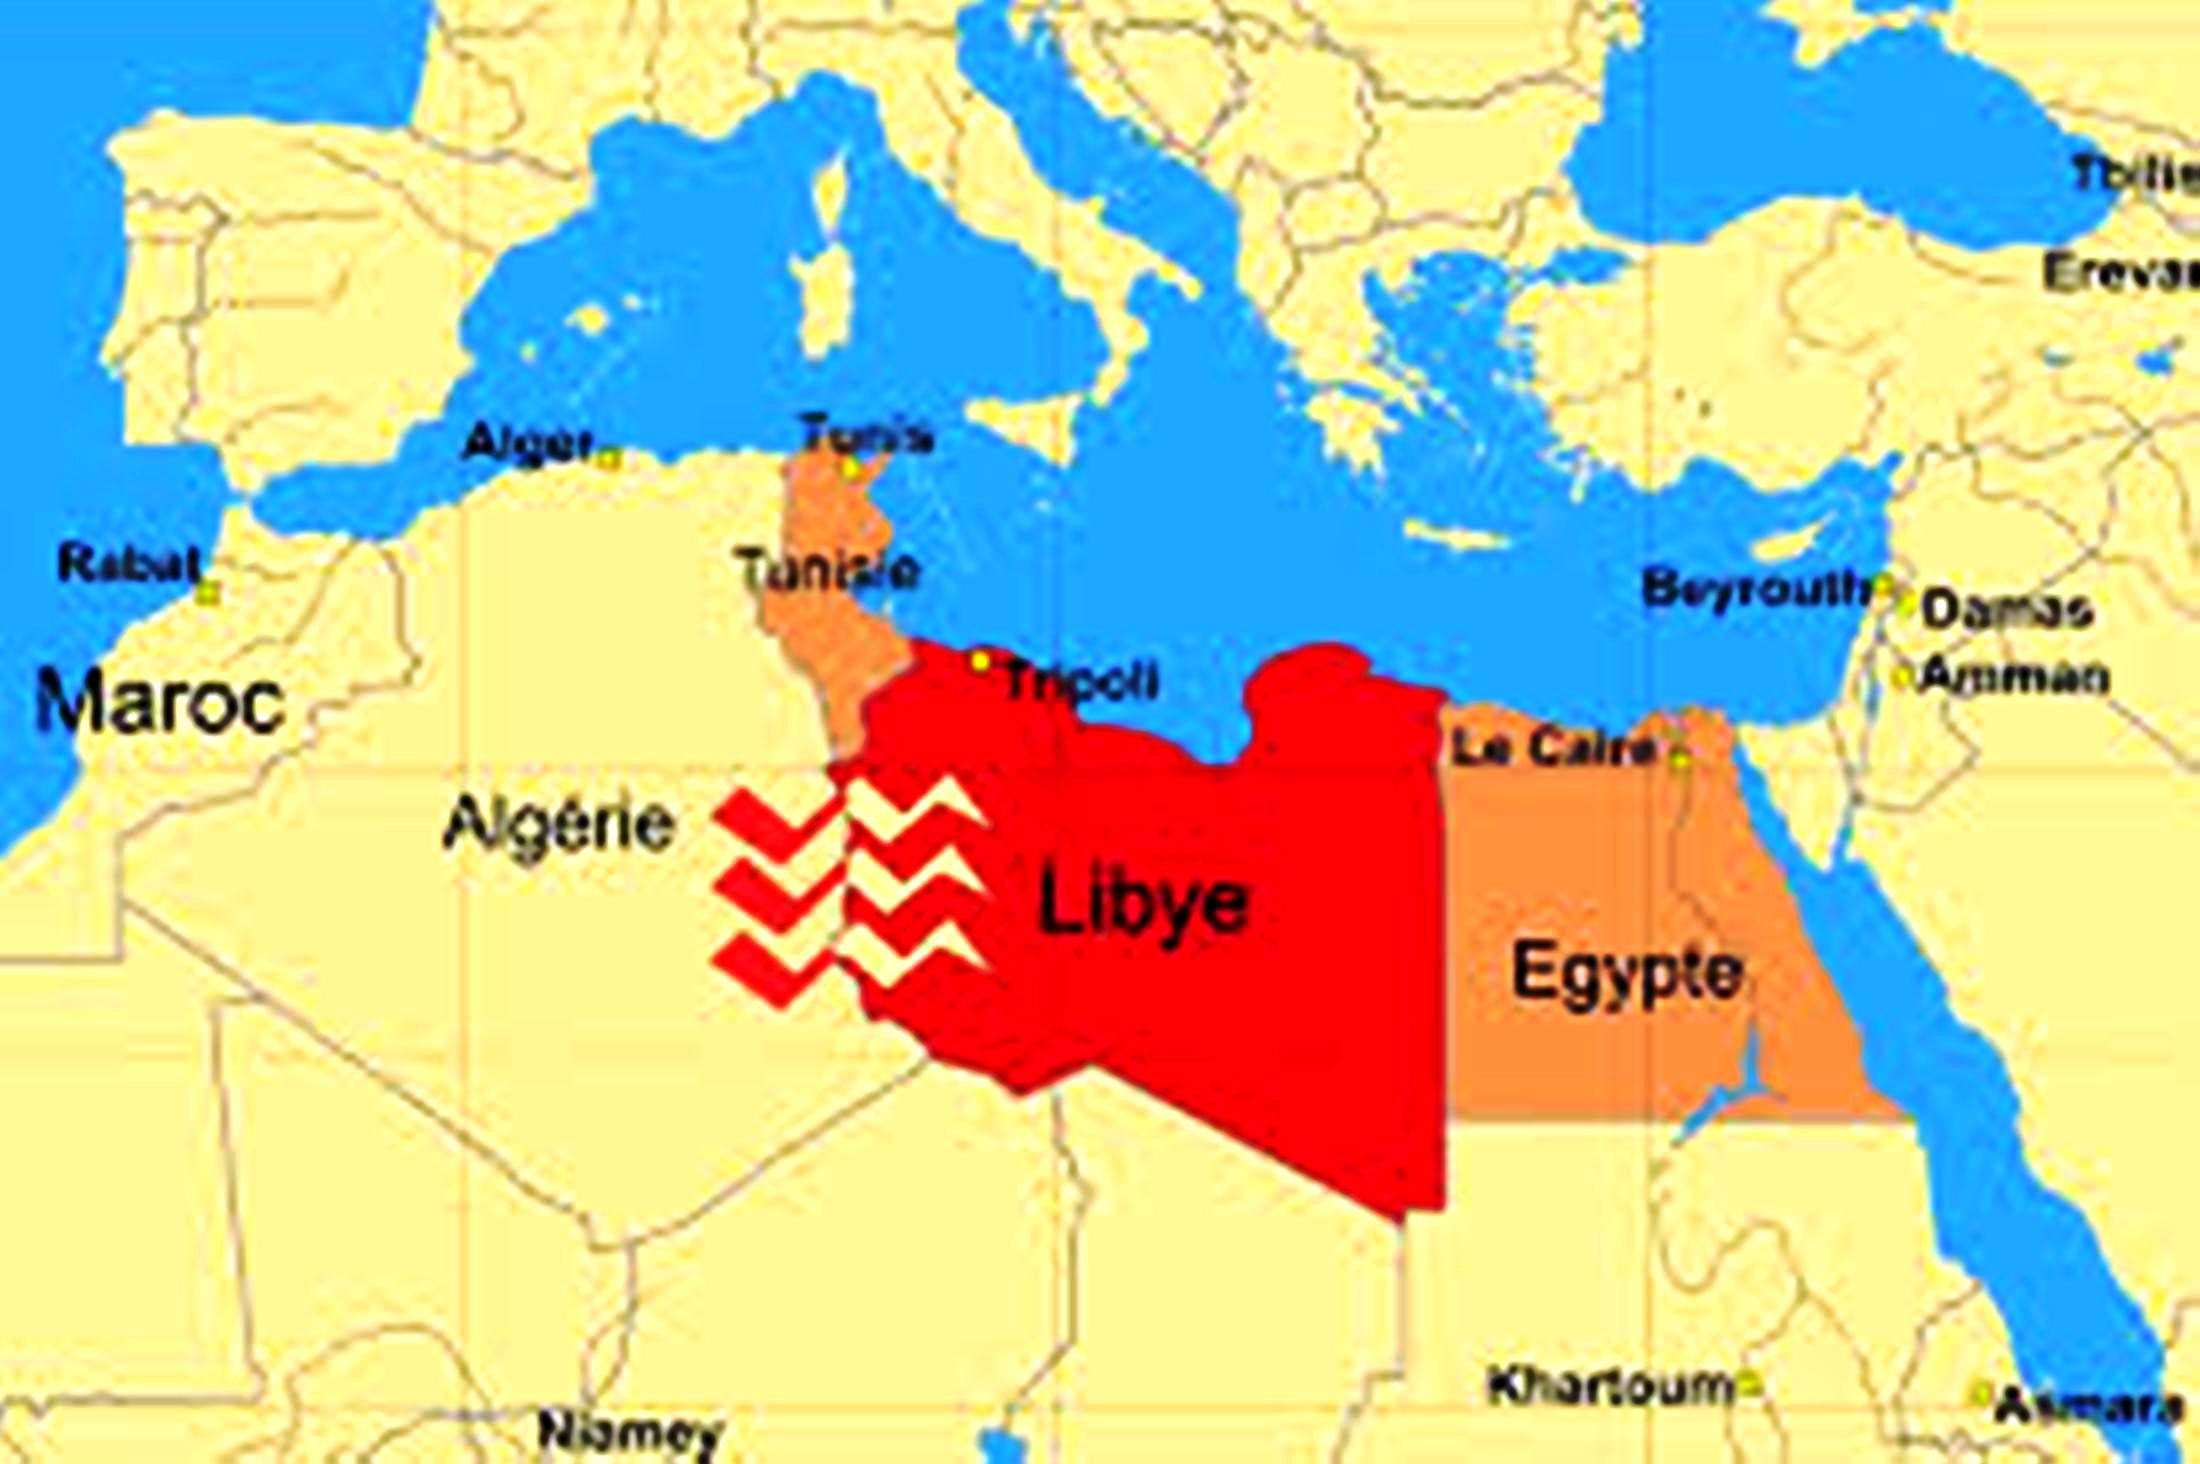 Ορισμένα ΜΜΕ κατηγορούν το Ιράν ότι έχει ευθυγραμμιστεί με το ΝΑΤΟ στη Λιβύη: αλήθεια ή λάθος;